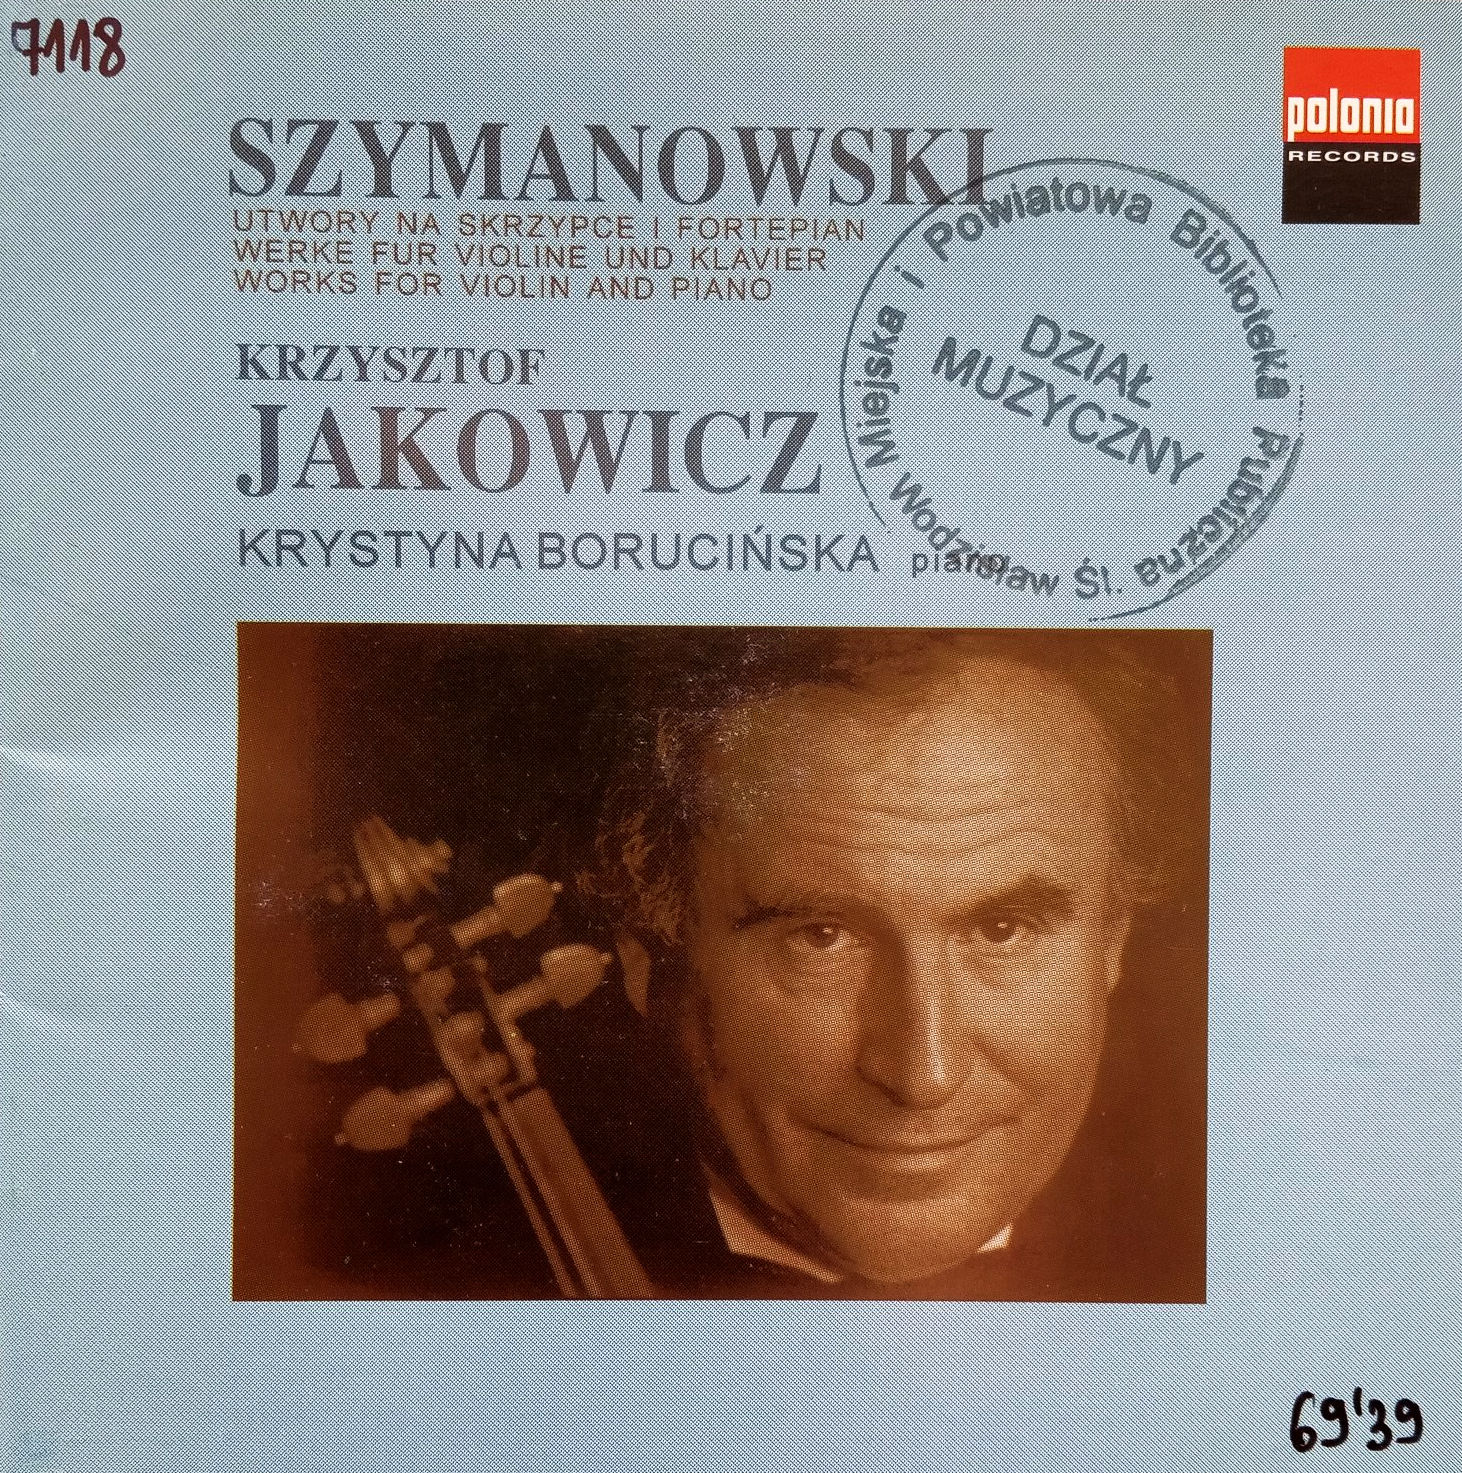 SZYMANOWSKI KAROL - Works For Violin And Piano